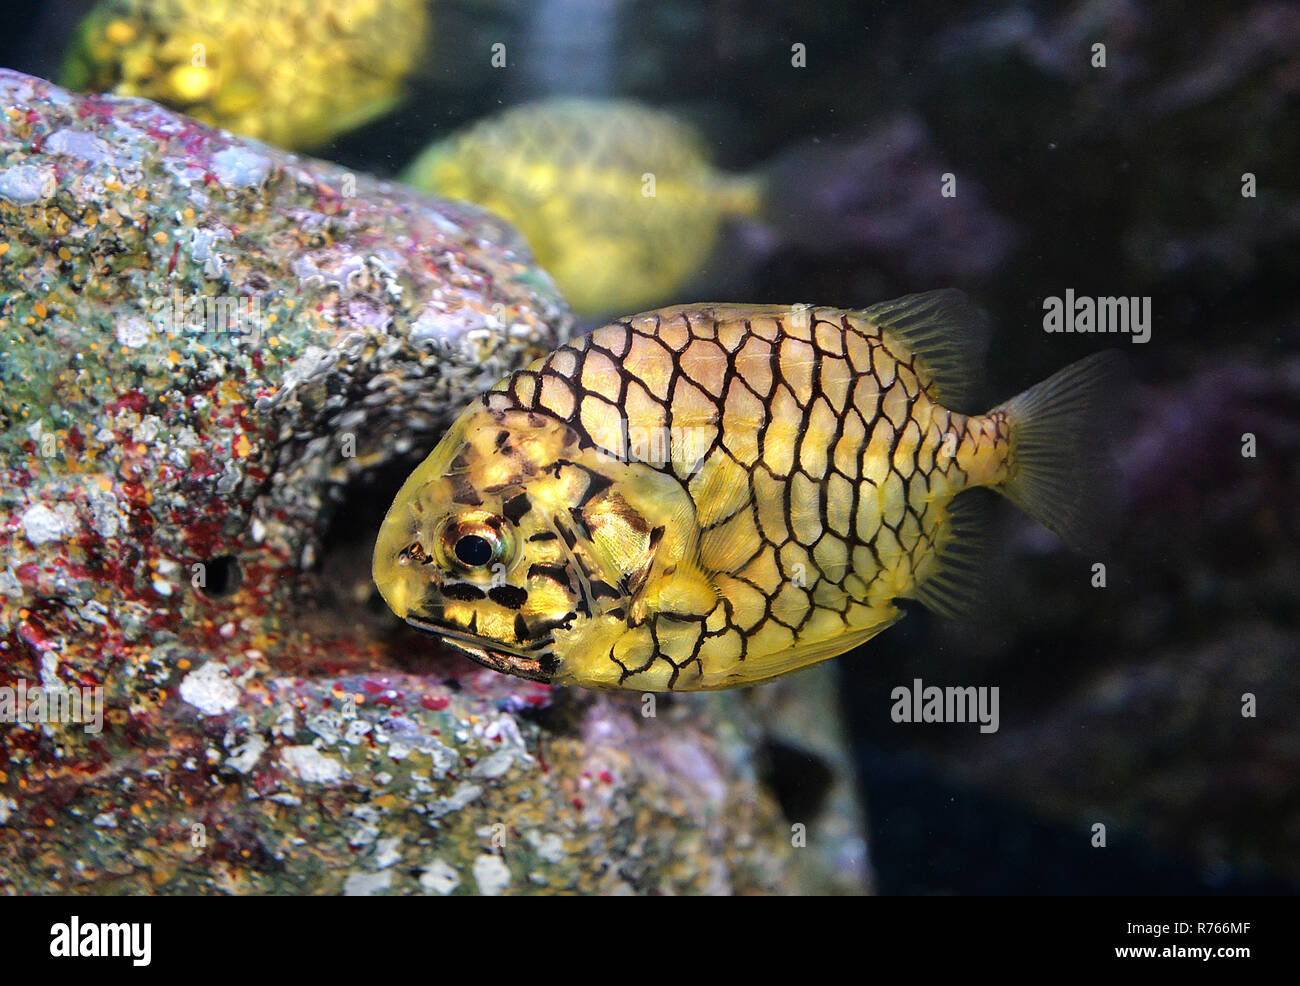 pineapple fish or Cleidopus gloriamaris / Underwater photography of  pineapple fish yellow swimming marine life underwater ocean Stock Photo -  Alamy